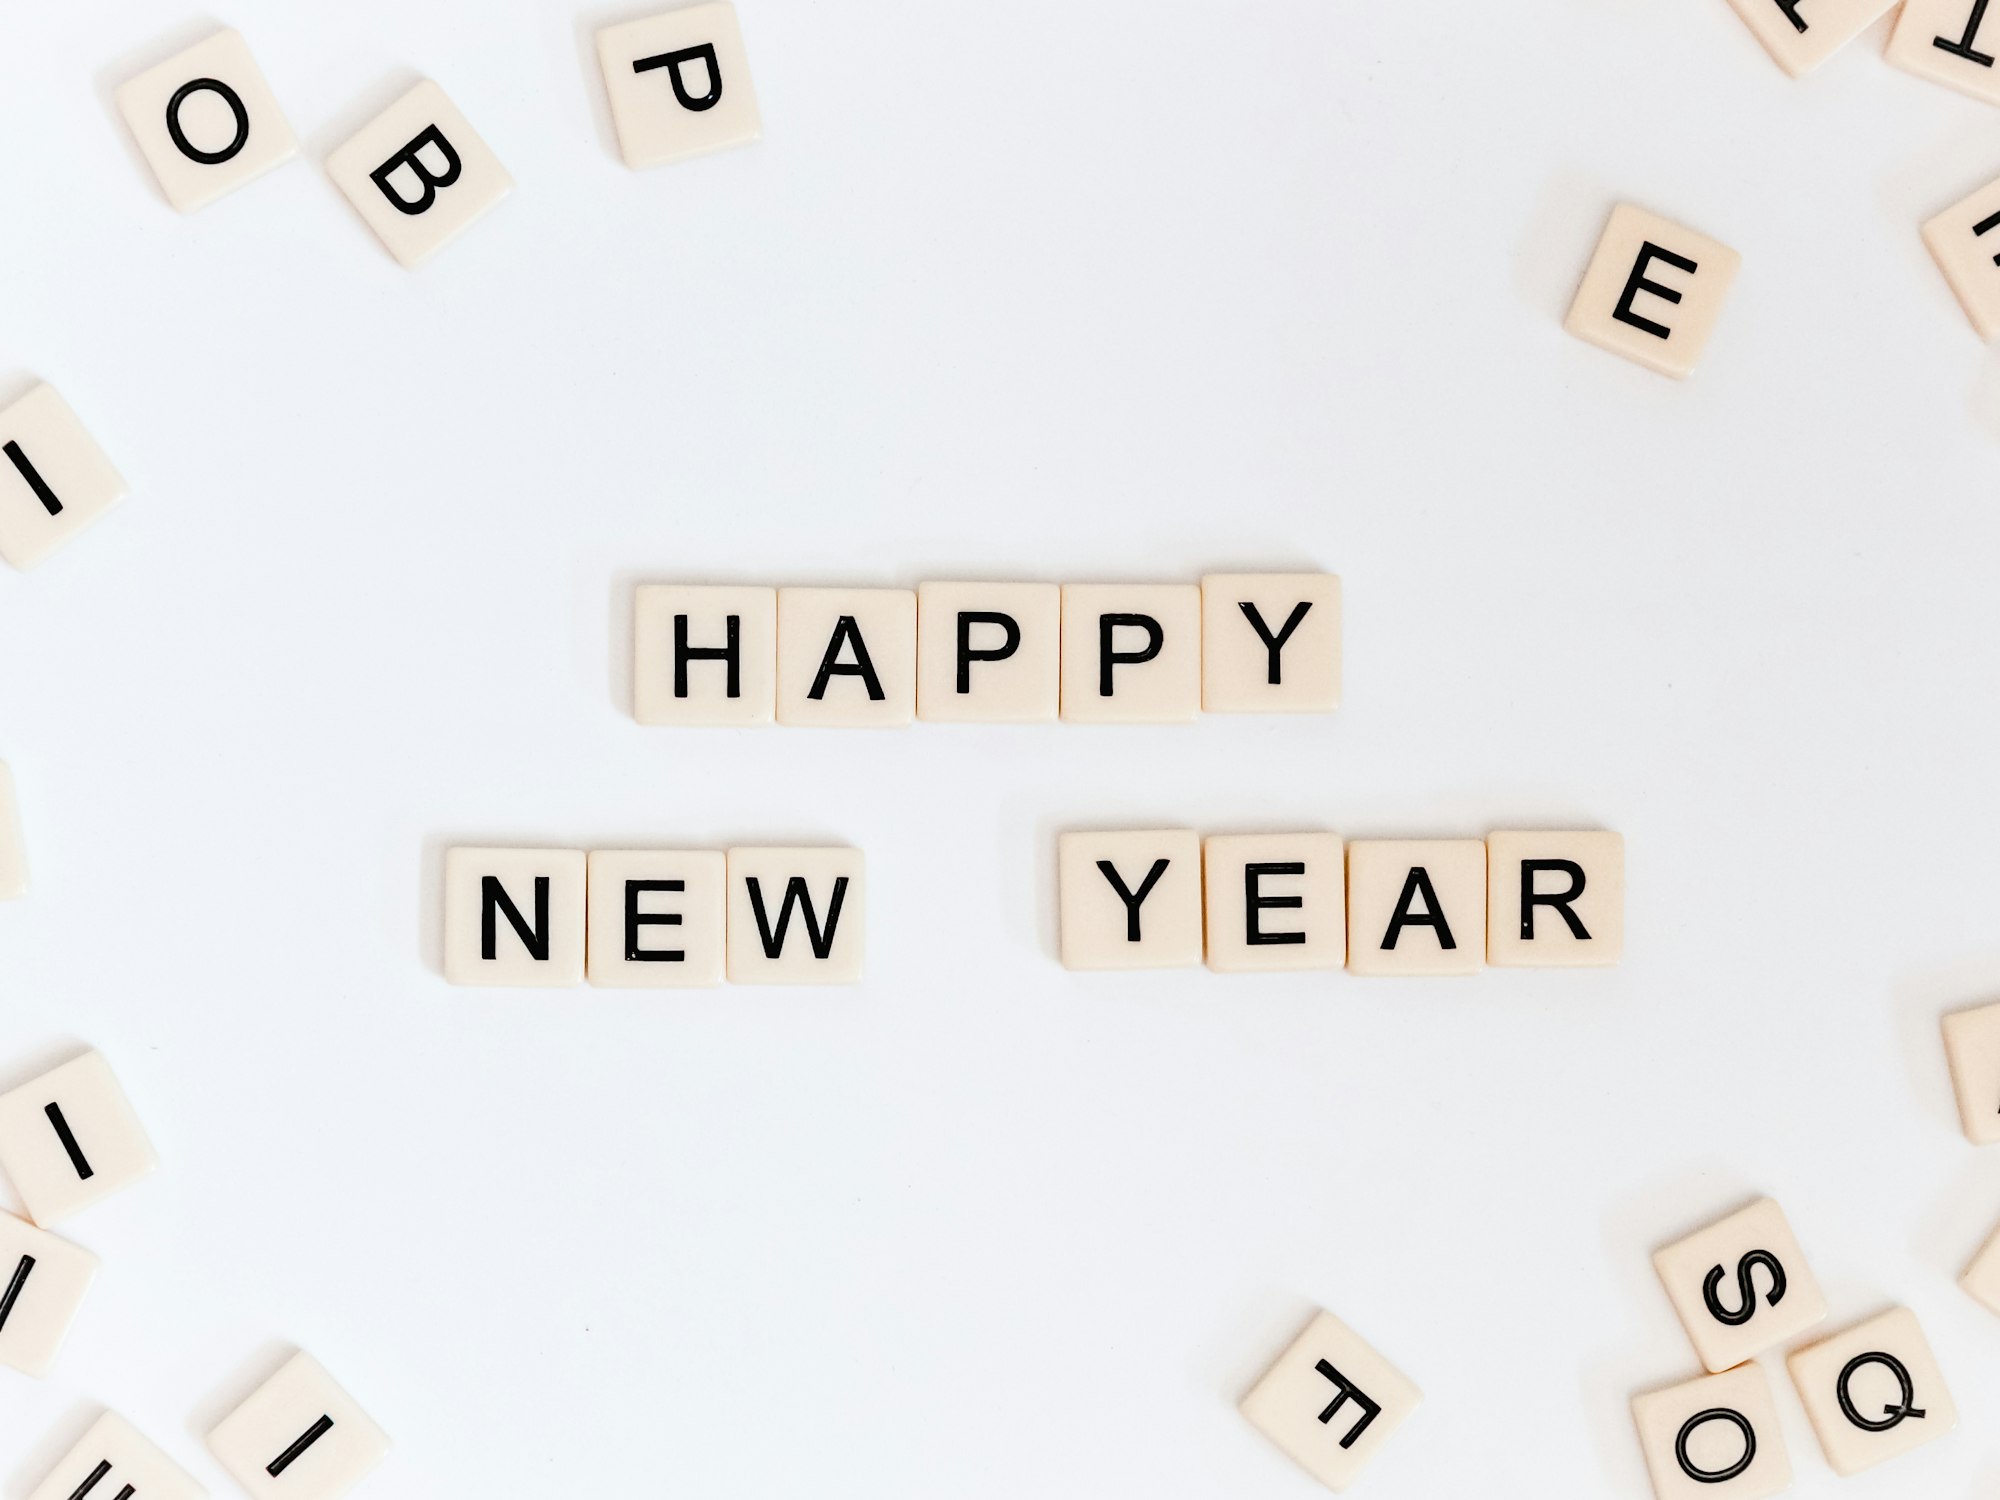 December Newsletter: New Year newsletter, hello 2021!